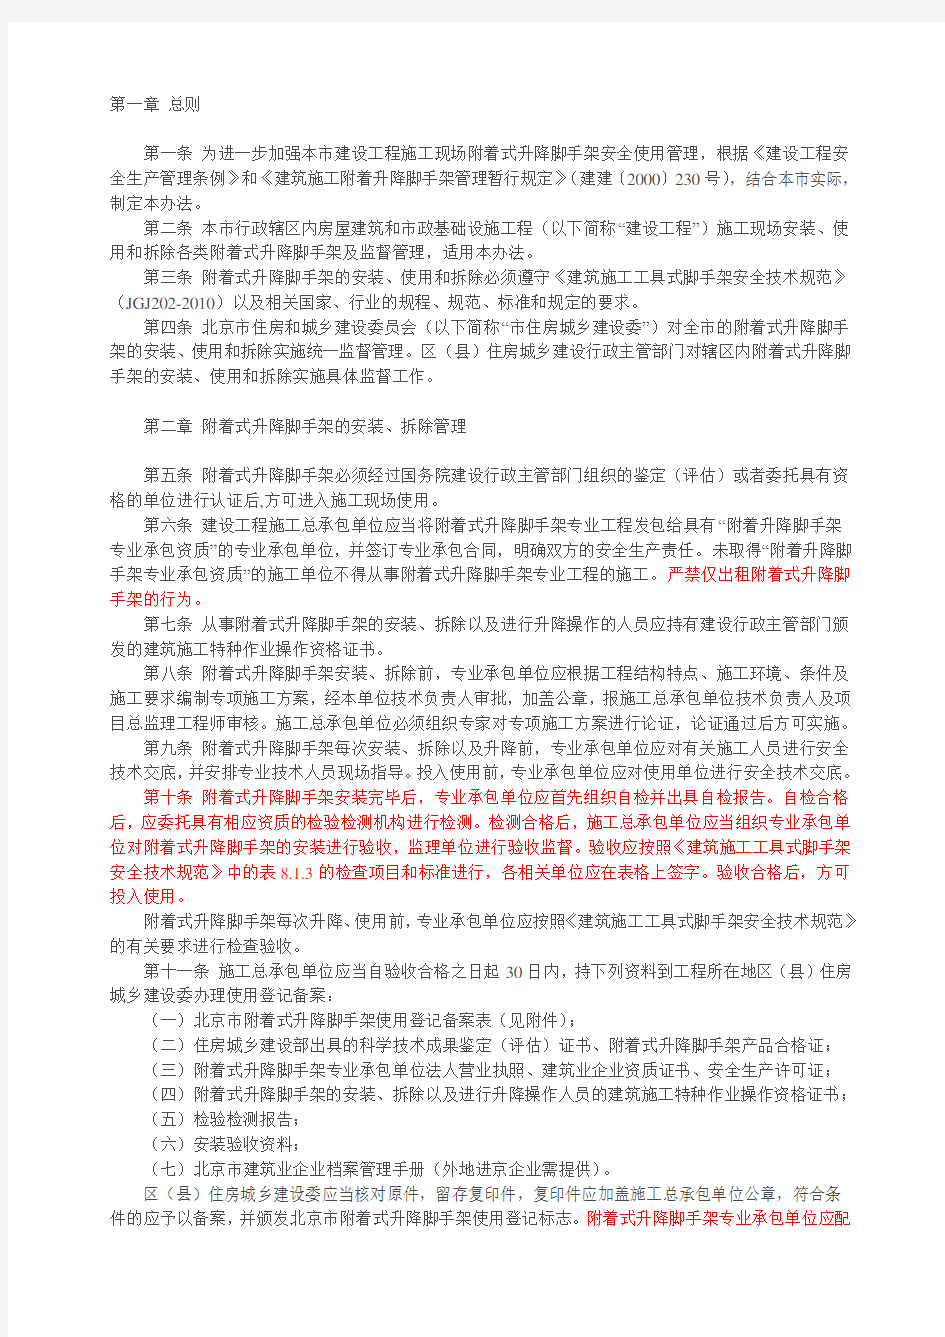 《北京市建设工程施工现场附着式升降脚手架安全使用管理办法》(京建法〔2012〕4号)